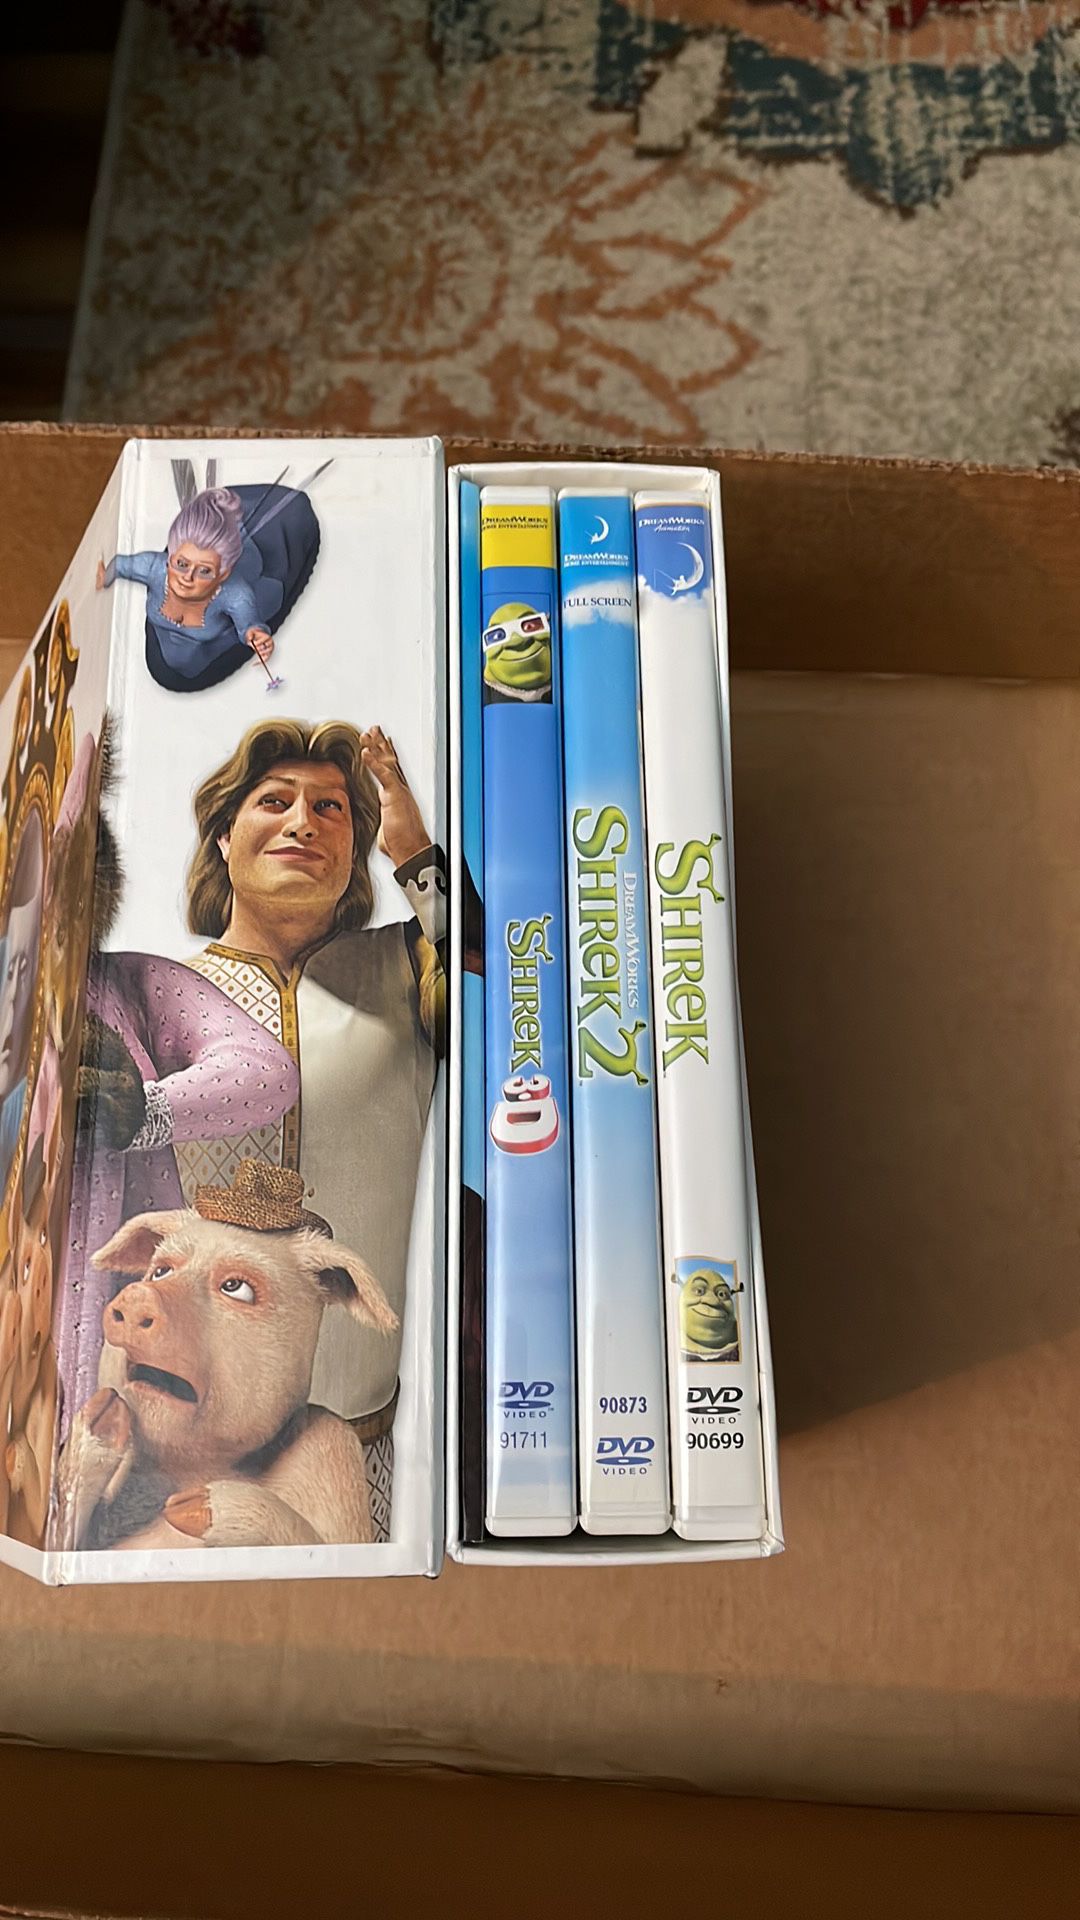 Shrek DVDs